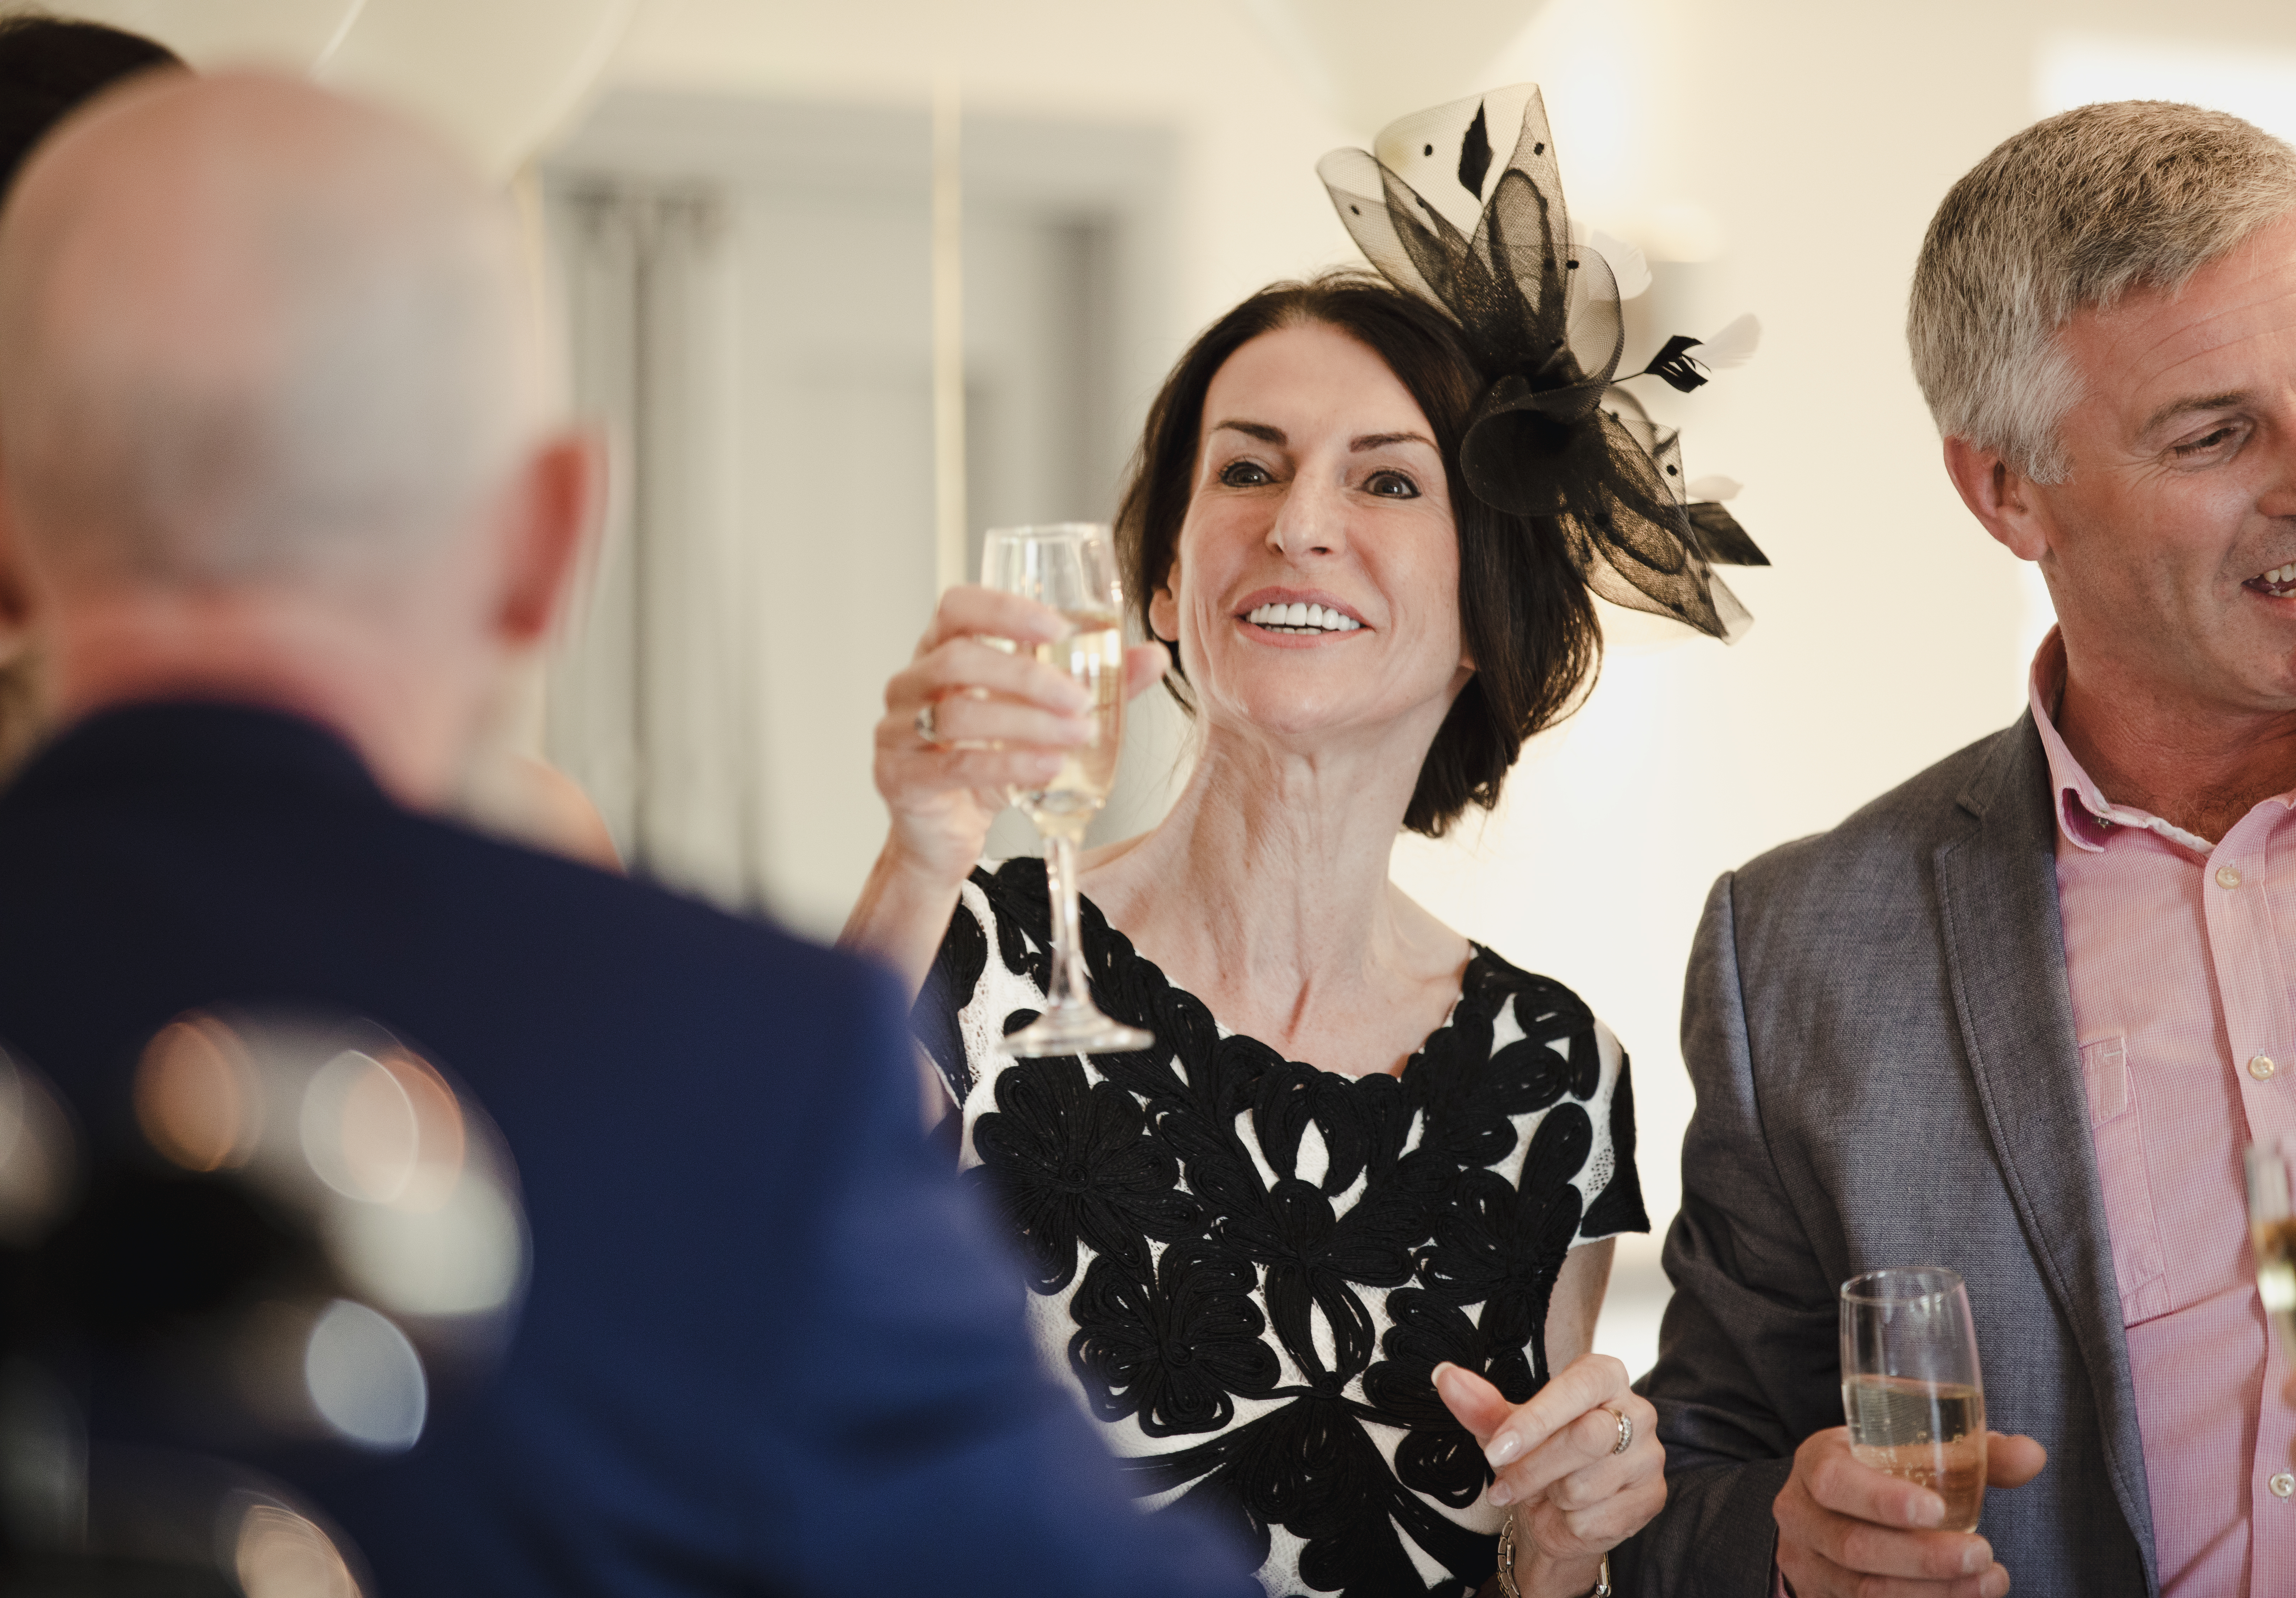 Les parents d'une mariée portent un toast à leur fille et leur gendre le jour de leur mariage | Source : Shutterstock